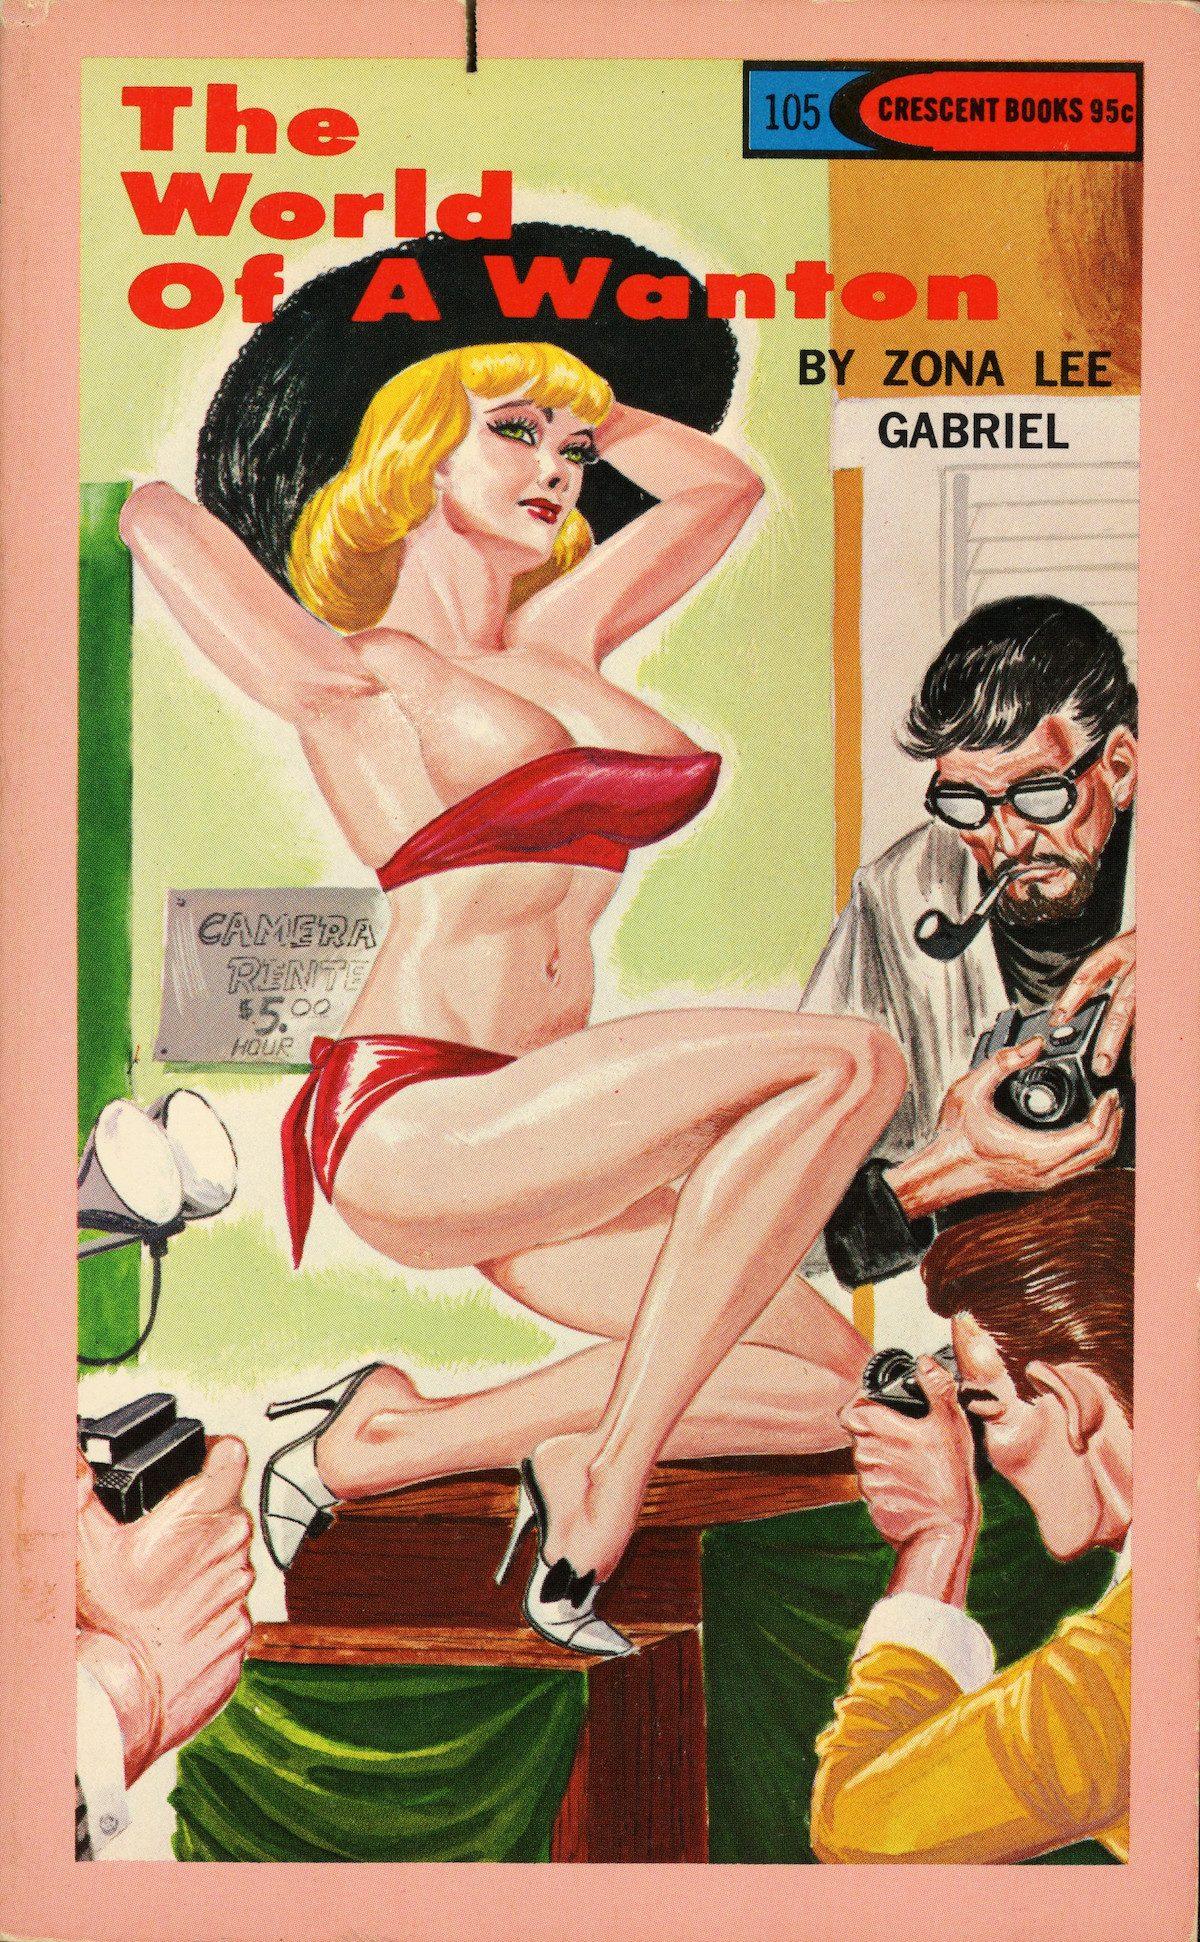 Gene Bilbrew: l'artiste fétiche chantant et ses fabuleuses couvertures sexuelles Pulp Fiction des années 1960